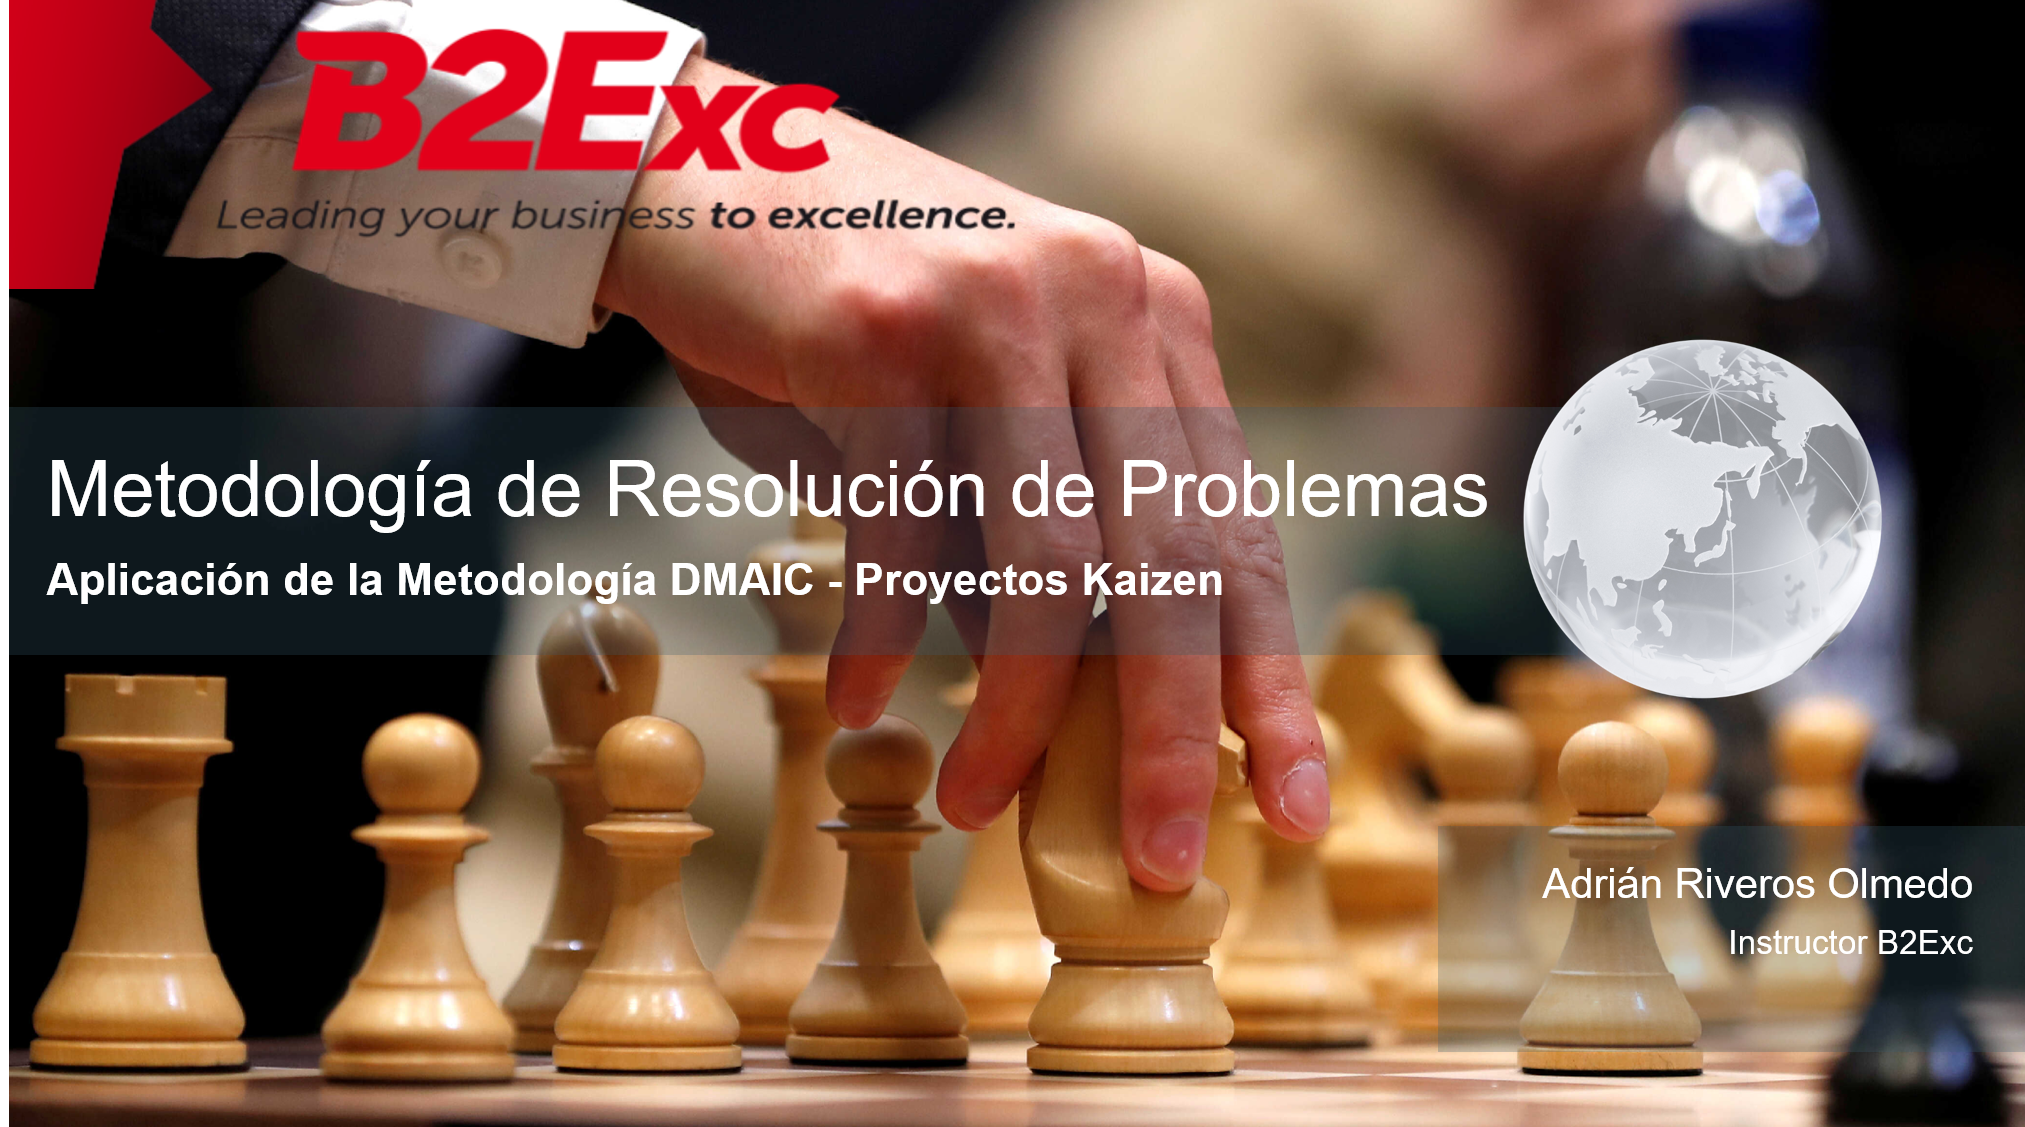 Formación en Metodología de Resolución de Problemas - Aplicación de la Metodología DMAIC